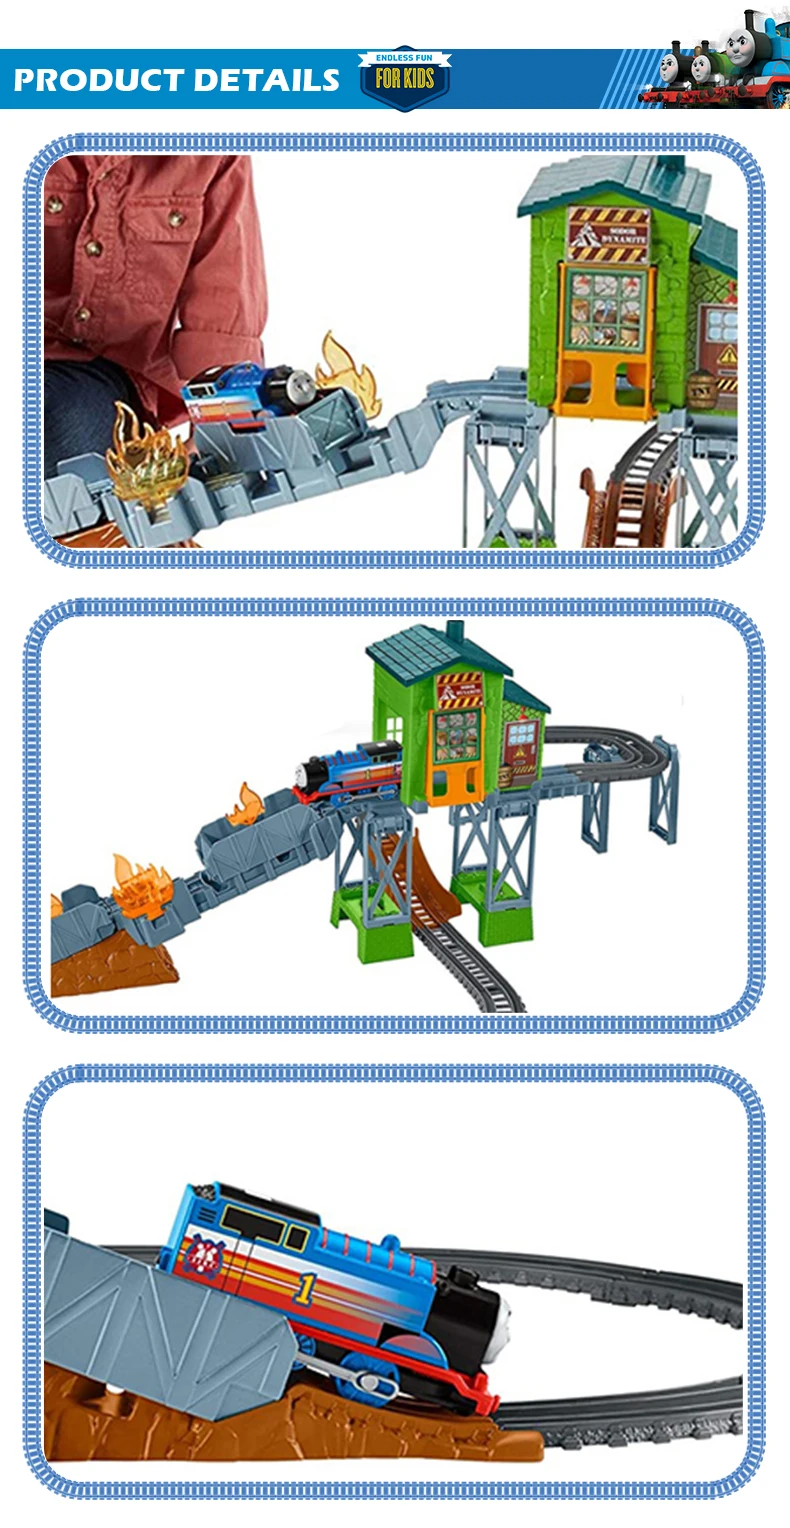 Томас и Друзья электрическая серия поезд игрушки Железная дорога строитель набор трекмастер огненные спасательные игрушки на тему приключений FBK47 для детского дня рождения